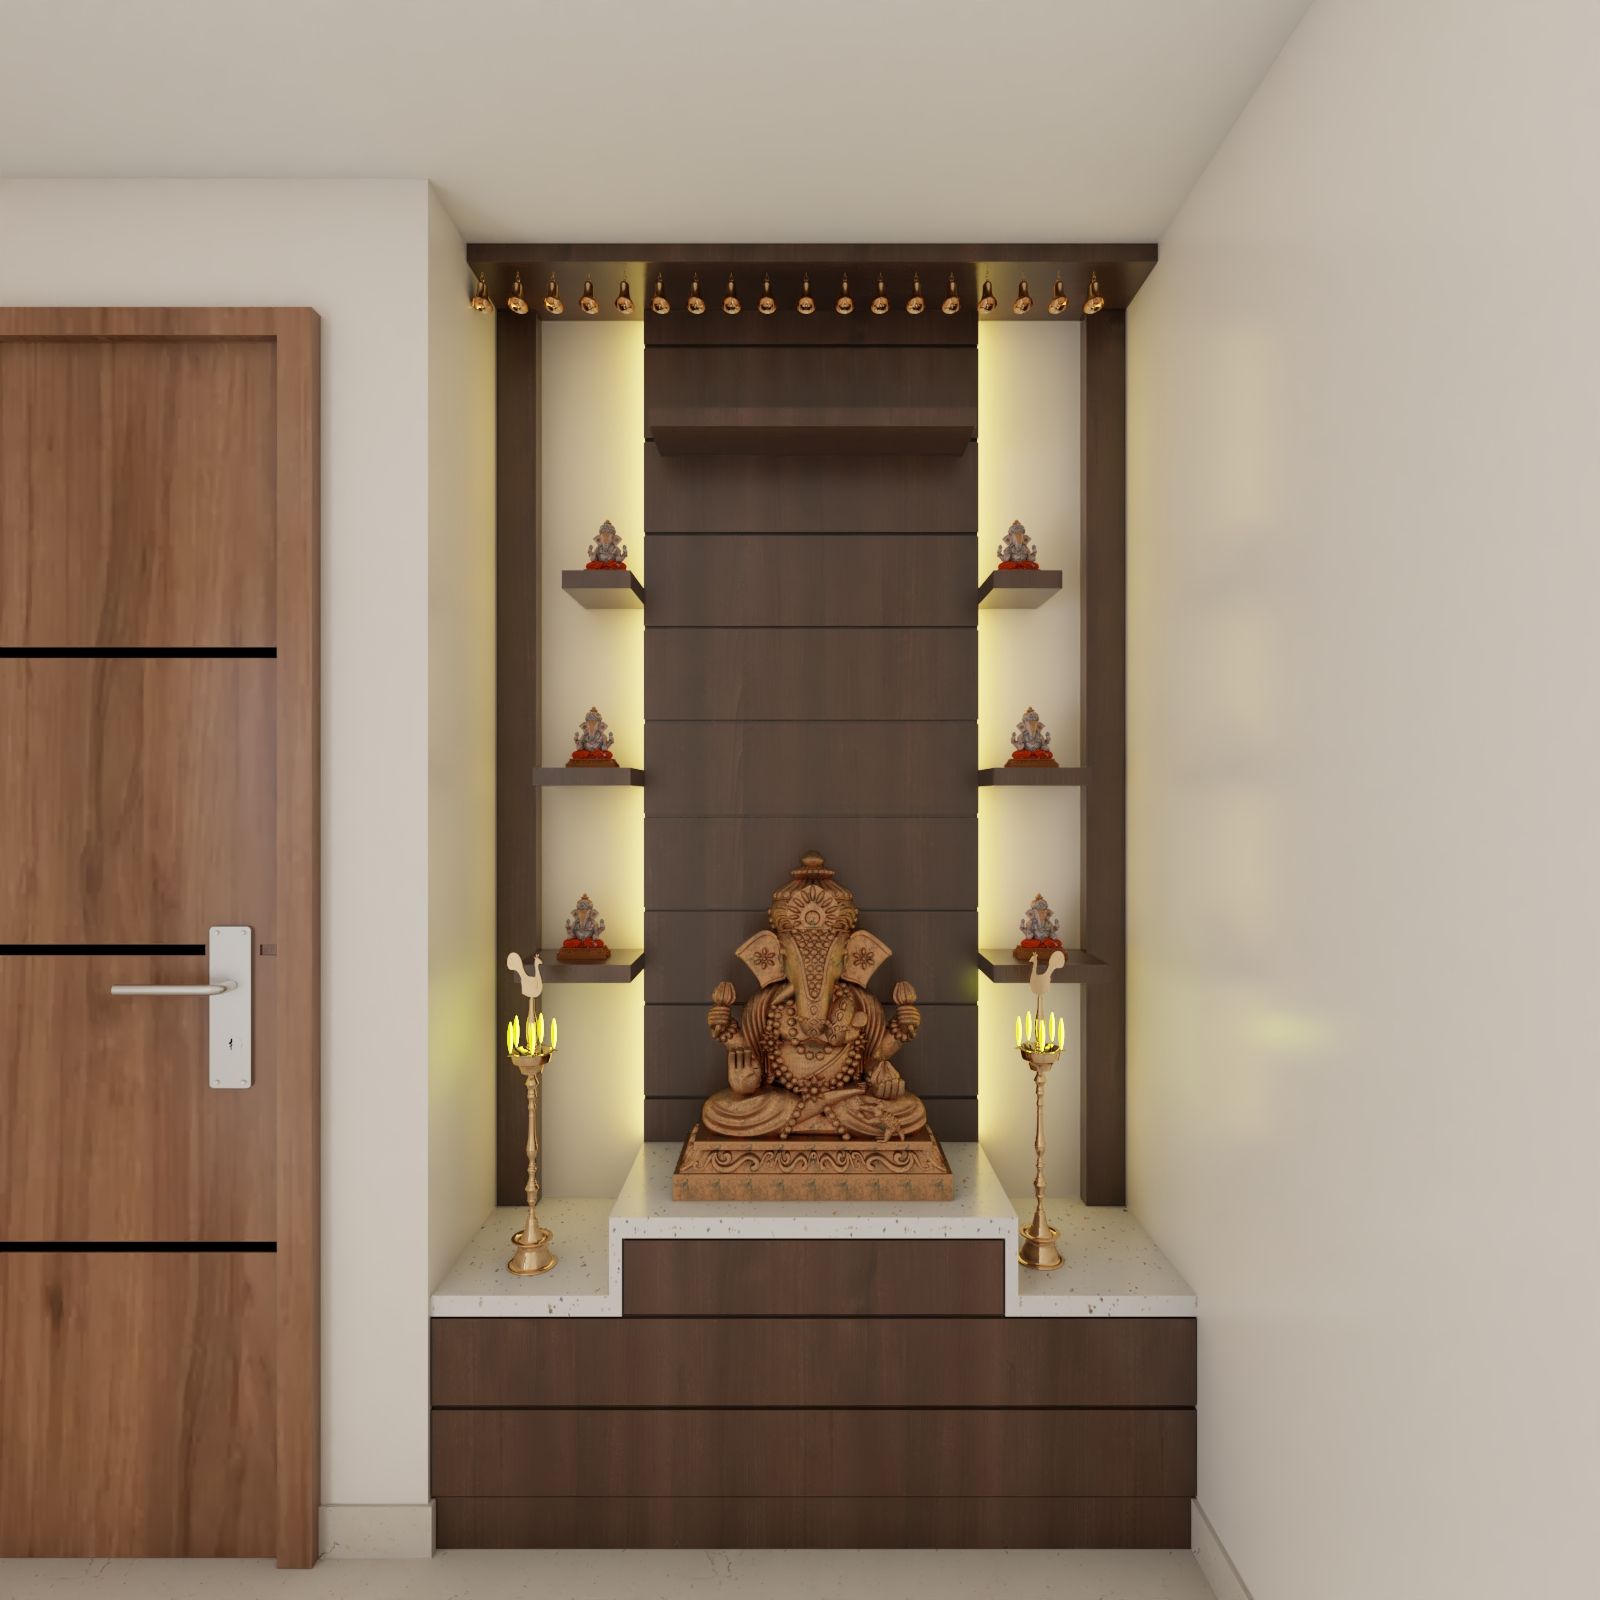 Modern Wooden Pooja Room Design With Open Racks